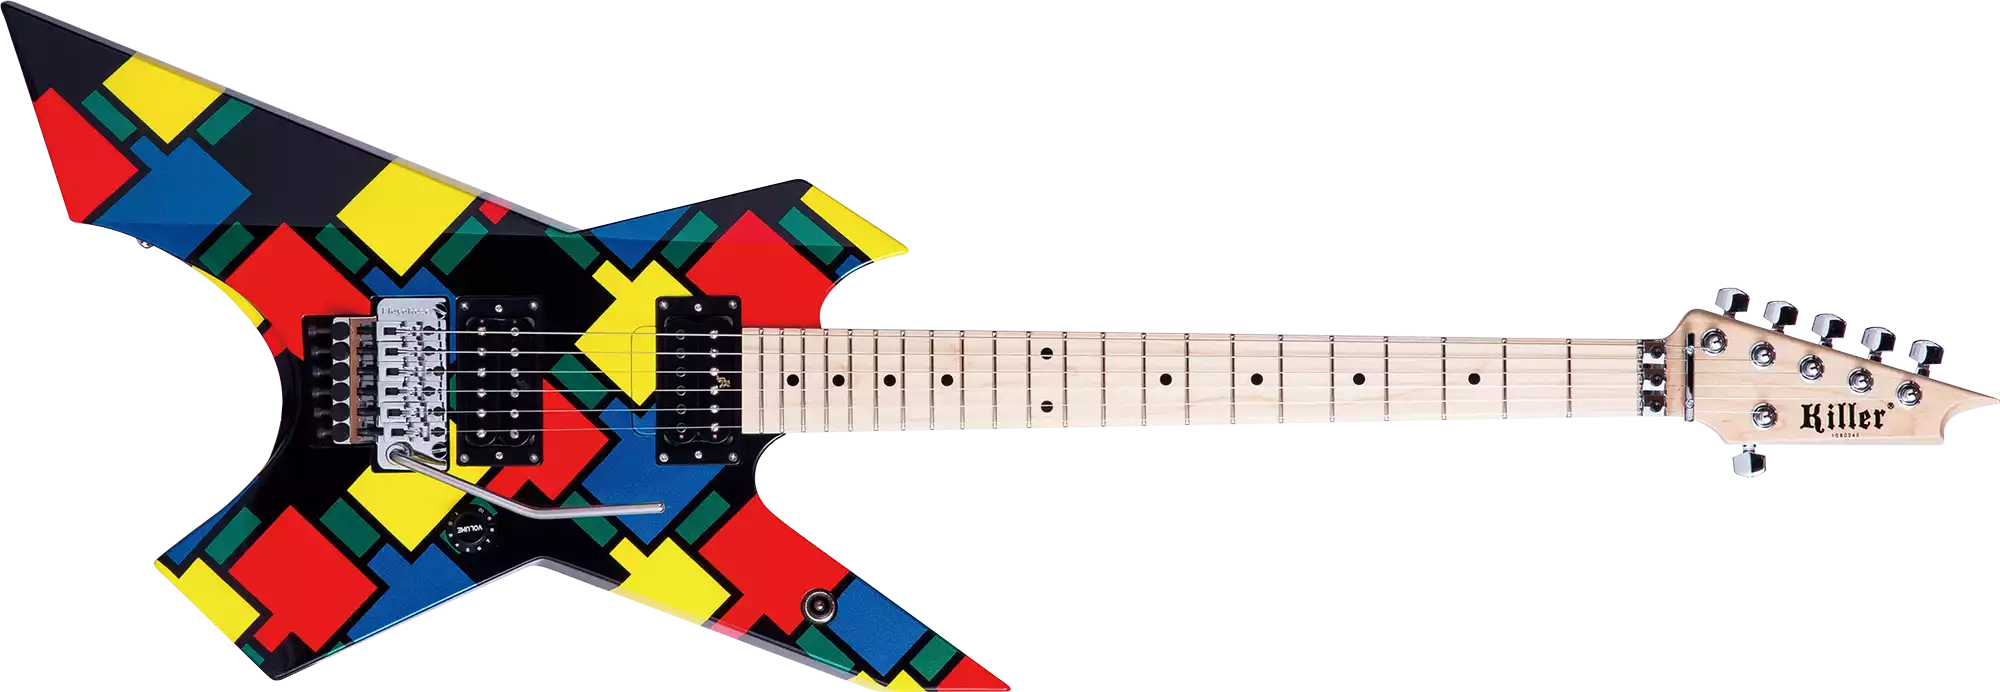 killer guitars kg-prime mosaic